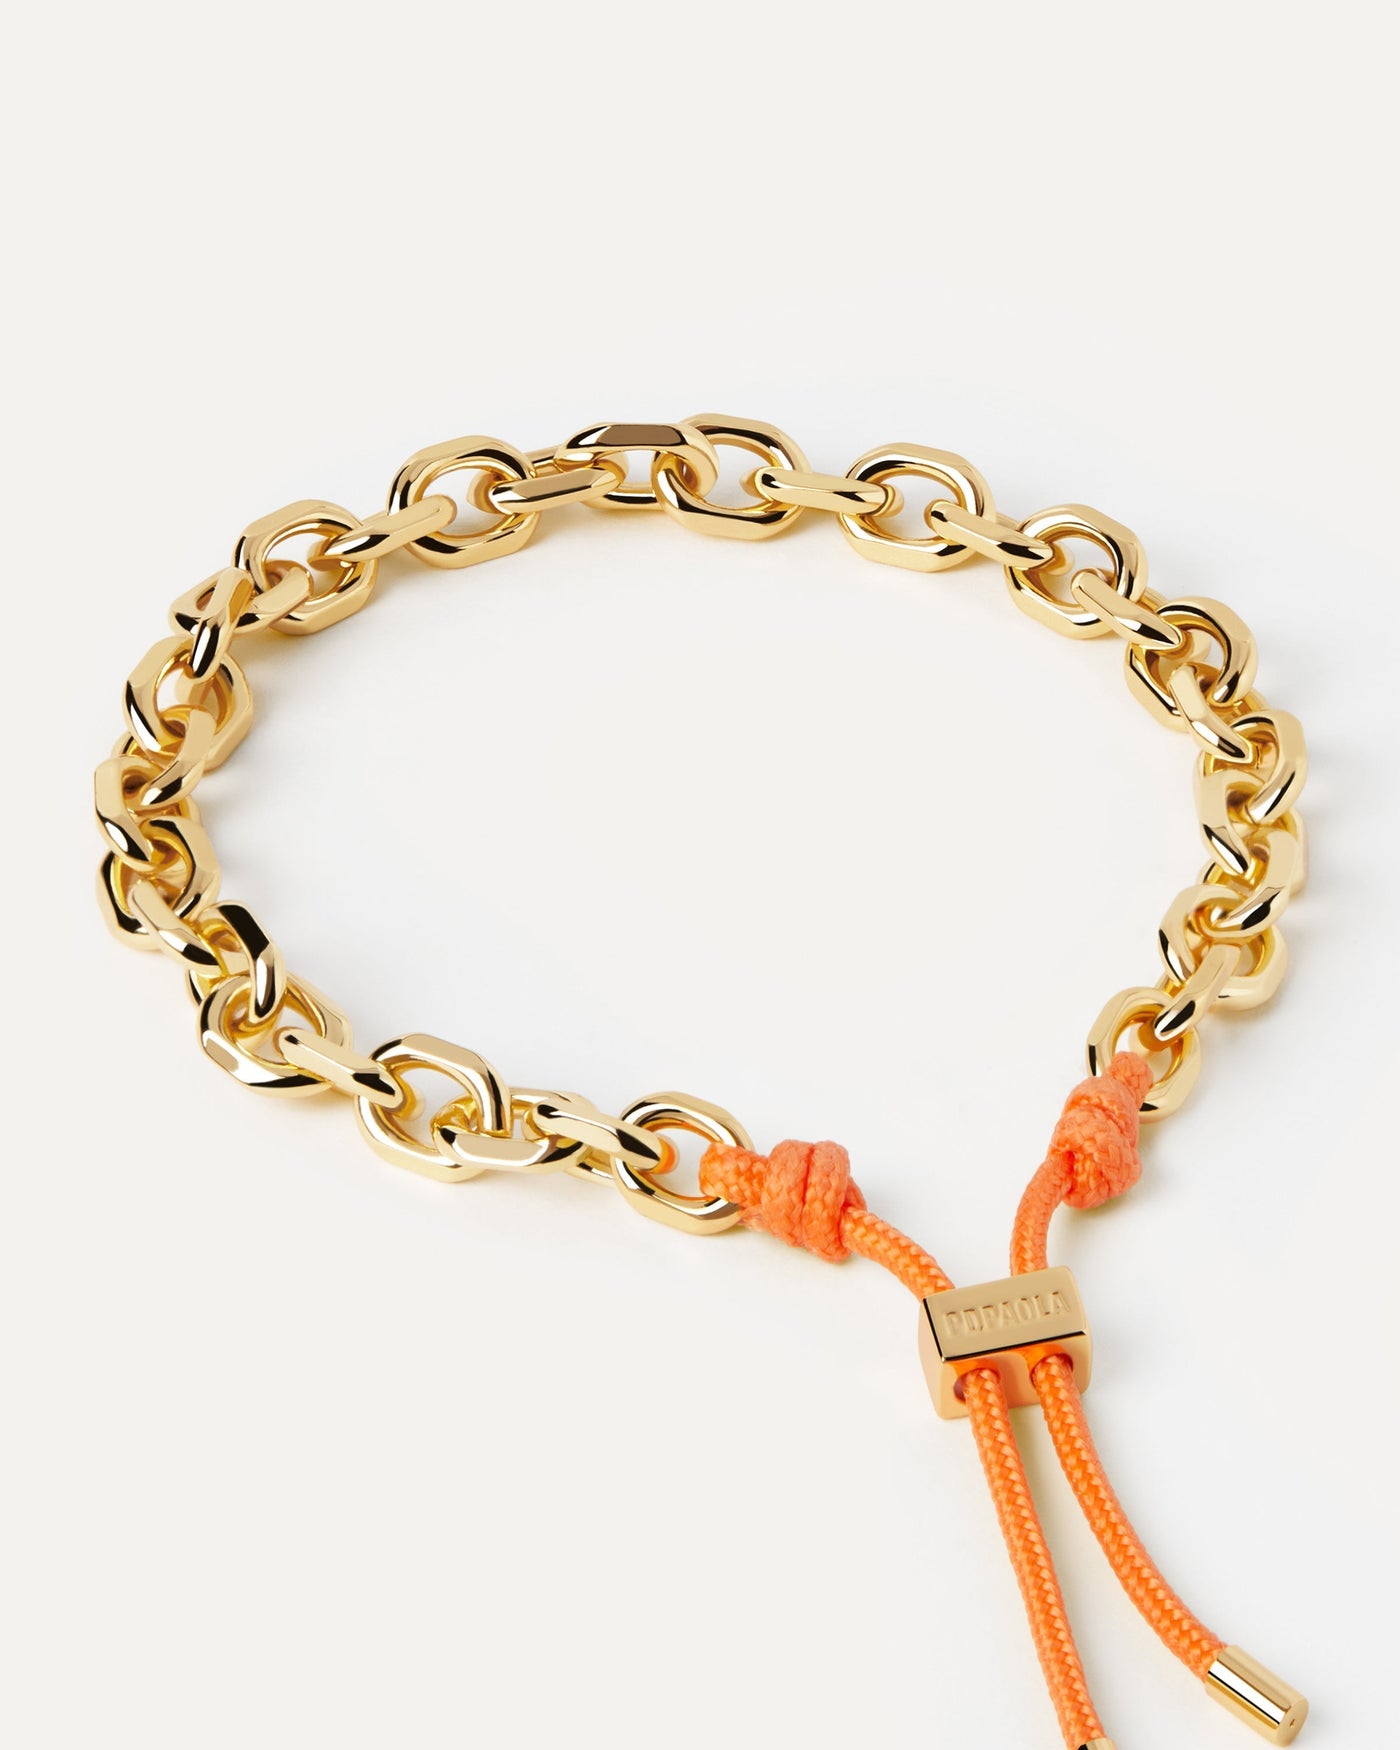 Sélection 2023 | Bracelet Cordon et Chaîne Tangerine Essential. Bracelet chaîne dorée avec corde orange et fermoir coulissant ajustable. Découvrez les dernières nouveautés de chez PDPAOLA. Commandez et recevez votre bijou en toute sérénité. Livraison gratuite.